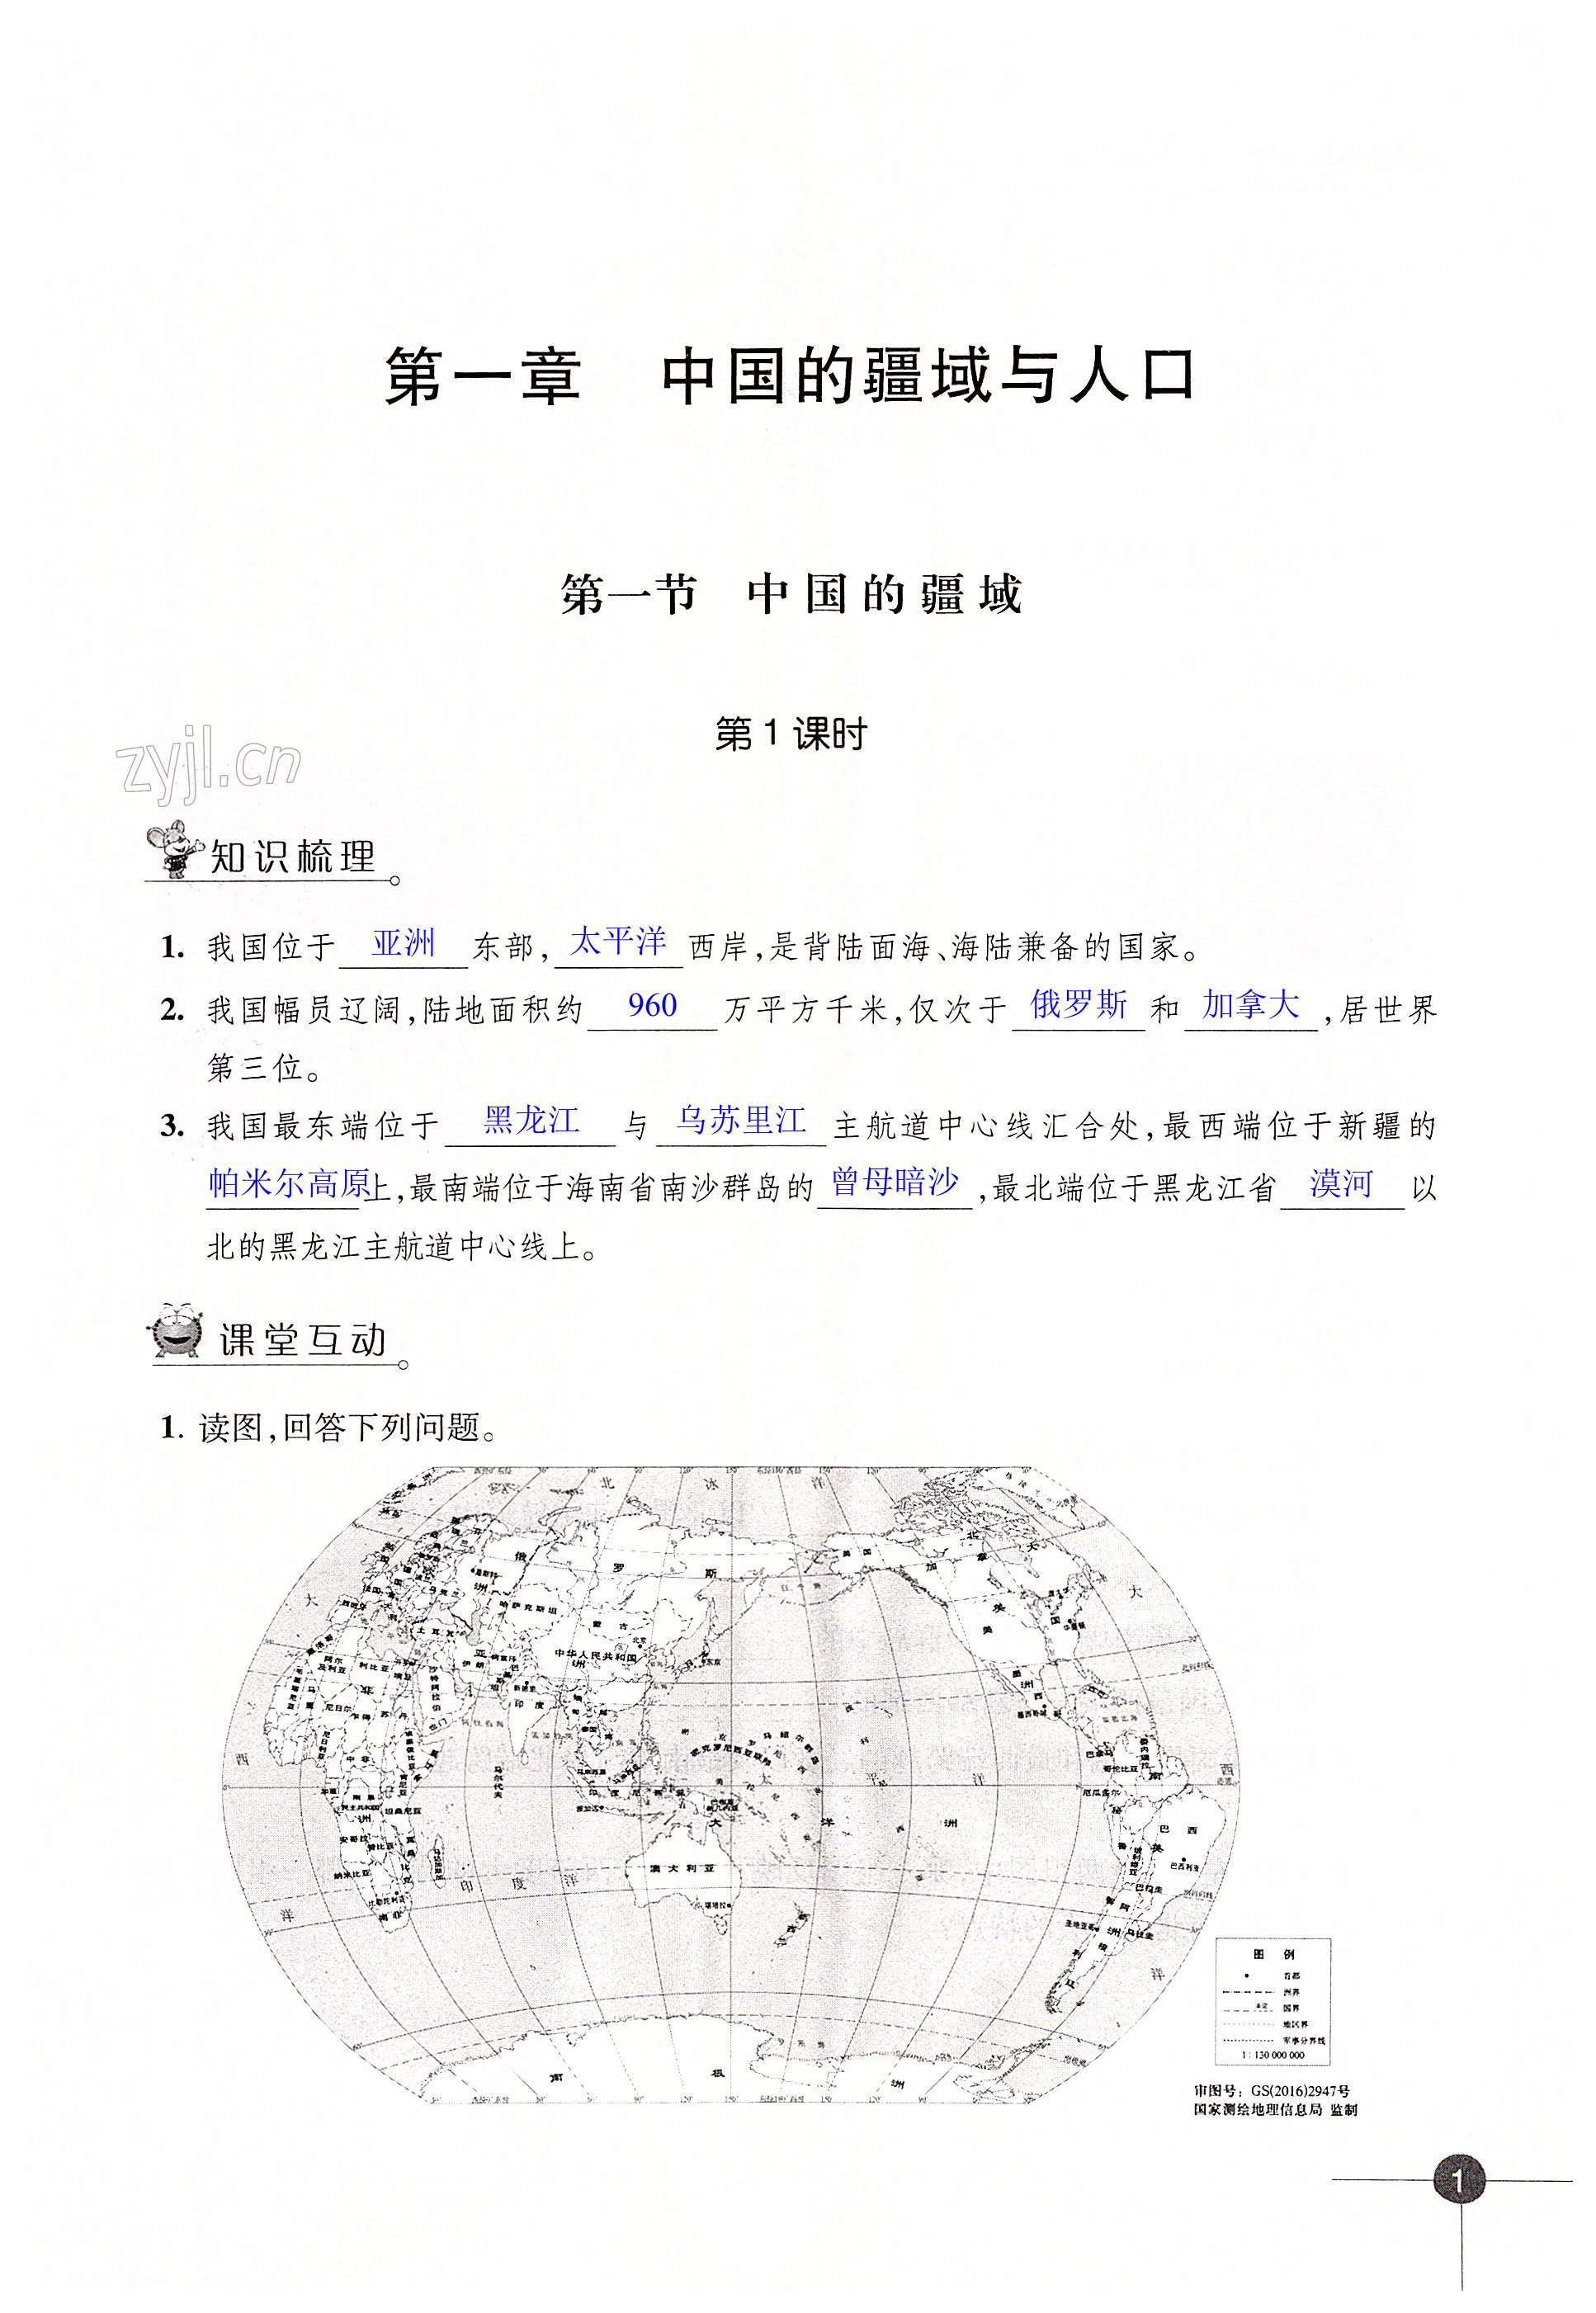 第一章 中国的疆域与人口 - 第1页